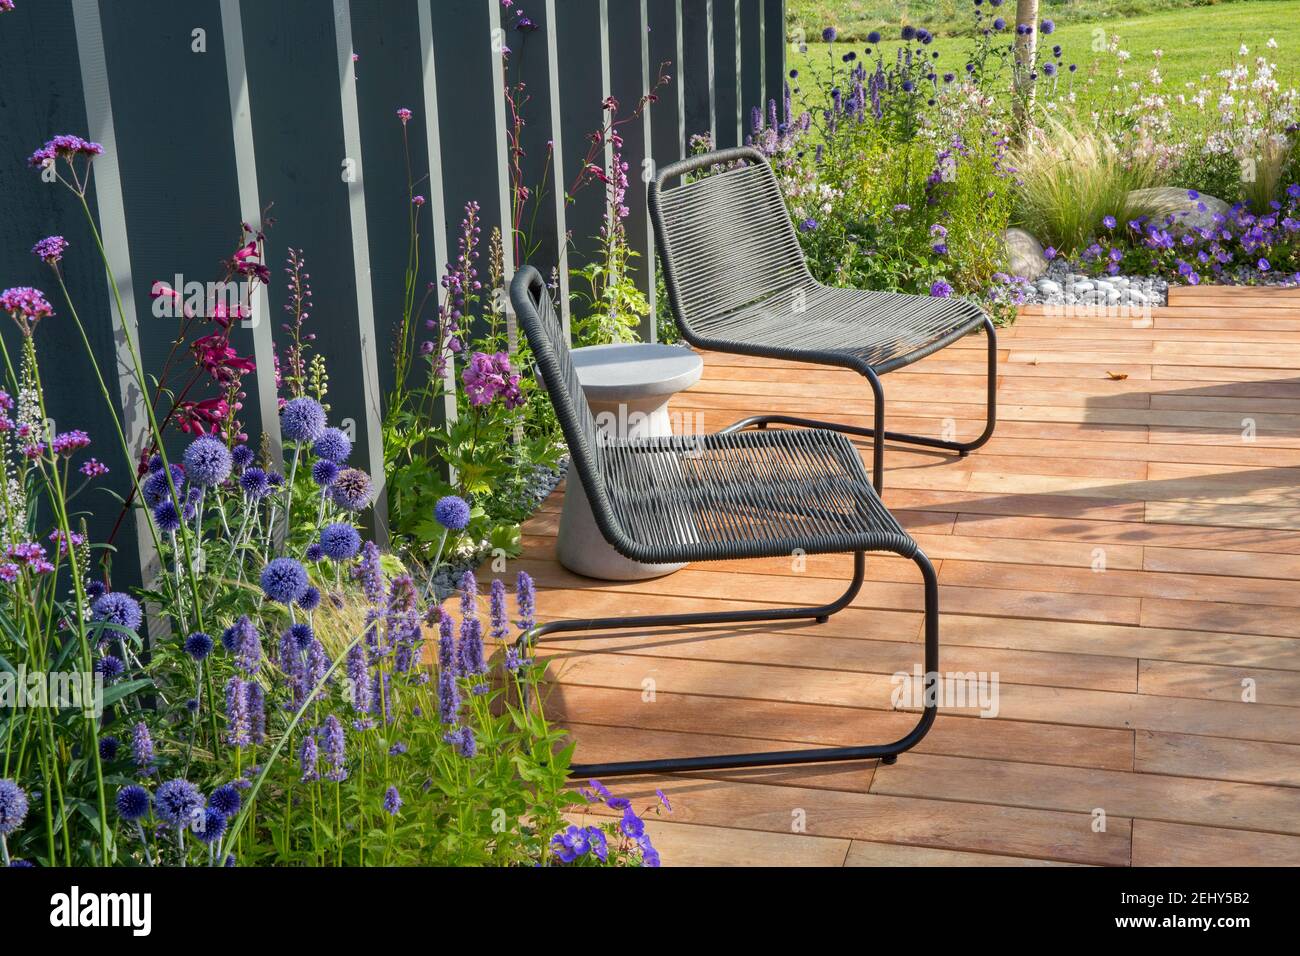 Chaises en métal noir sur terrasse en bois terrasse avec jardin Panneaux de clôture plantation d'Echinops - Verbena bonariensis Agastache et Perovskia Angleterre Royaume-Uni Banque D'Images